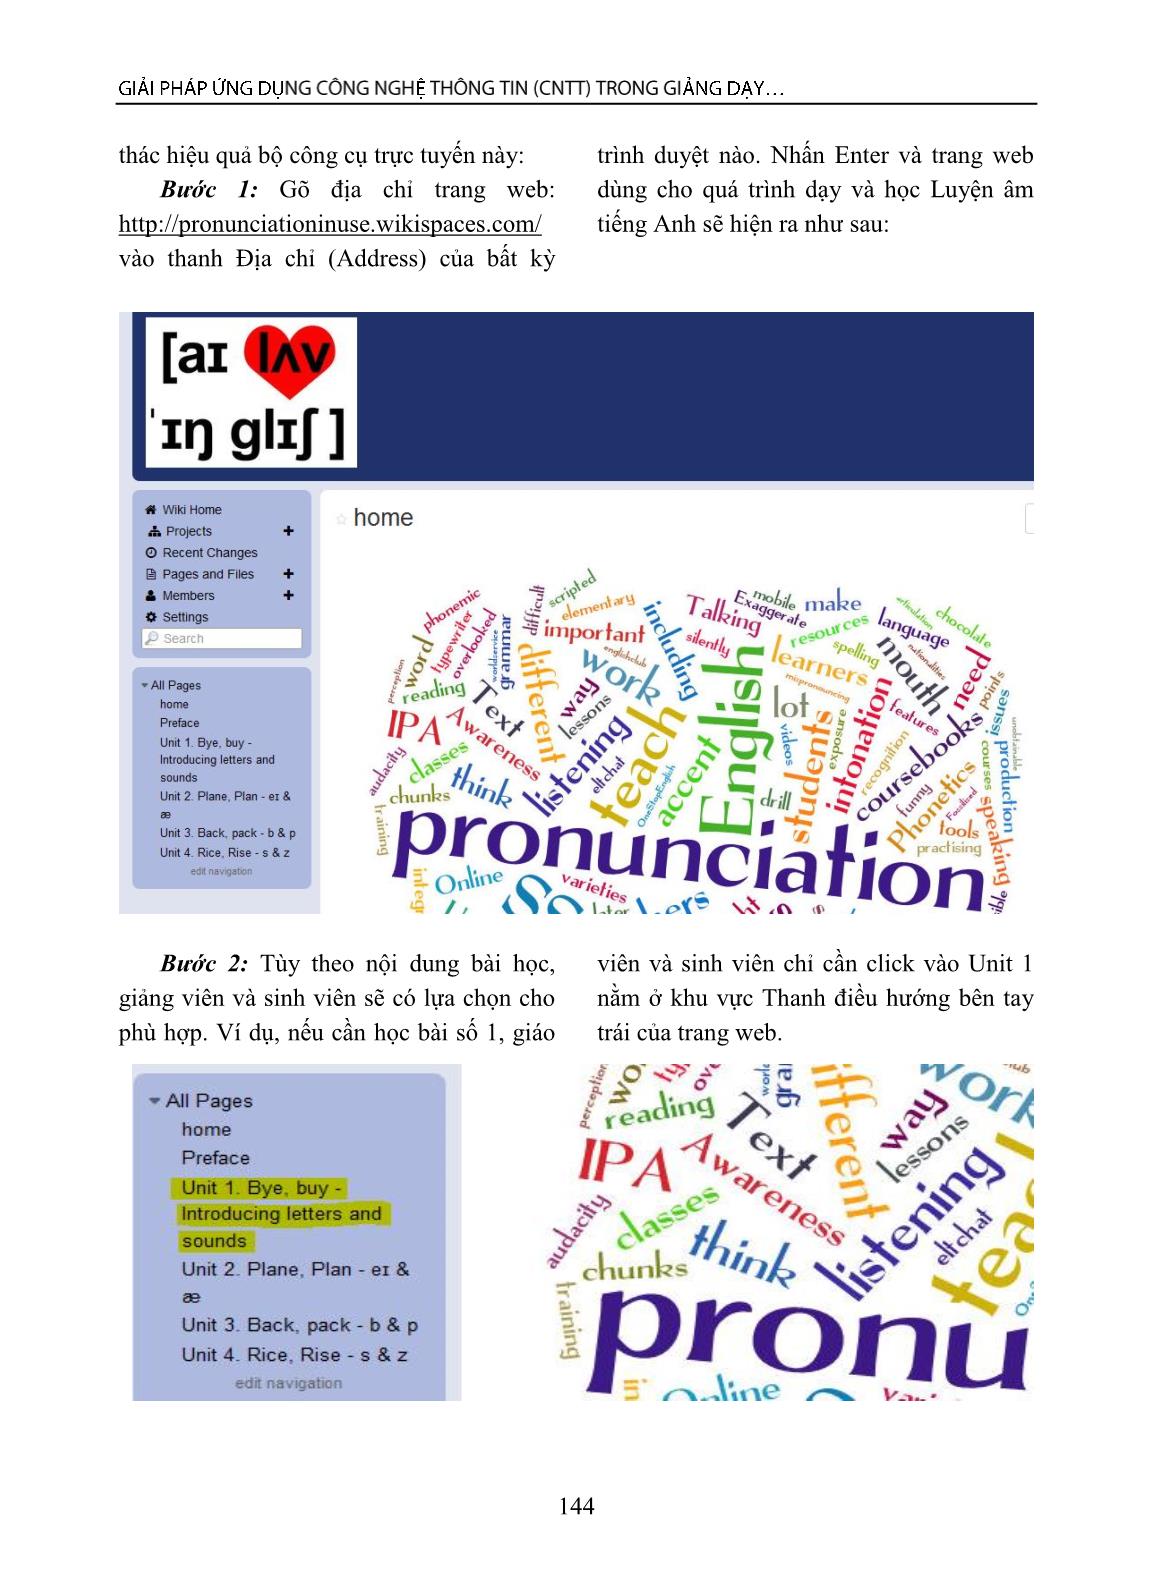 Giải pháp ứng dụng công nghệ thông tin (CNTT) trong giảng dạy và học tập môn Luyện âm cho sinh viên chuyên ngành Tiếng Anh tại trường đại học ở Việt Nam trang 3